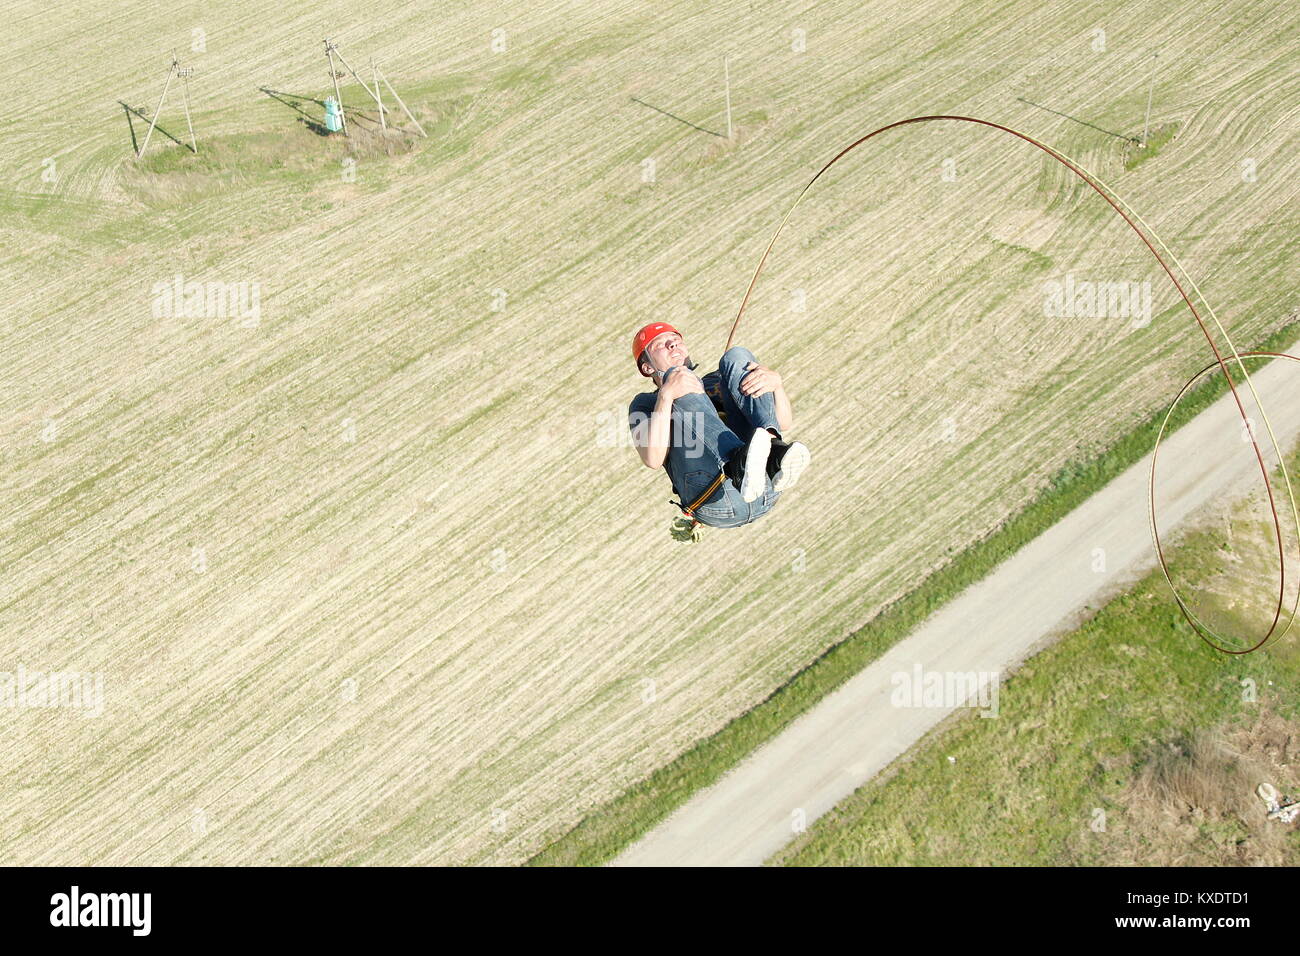 Belarus, Gomel, Mai 06, 2017 mit einem Seil springen. Extreme Menschen springen aus einer großen Höhe. Springen mit Seil. Flug nach unten auf das Seil. engagieren sich im ropejump Stockfoto